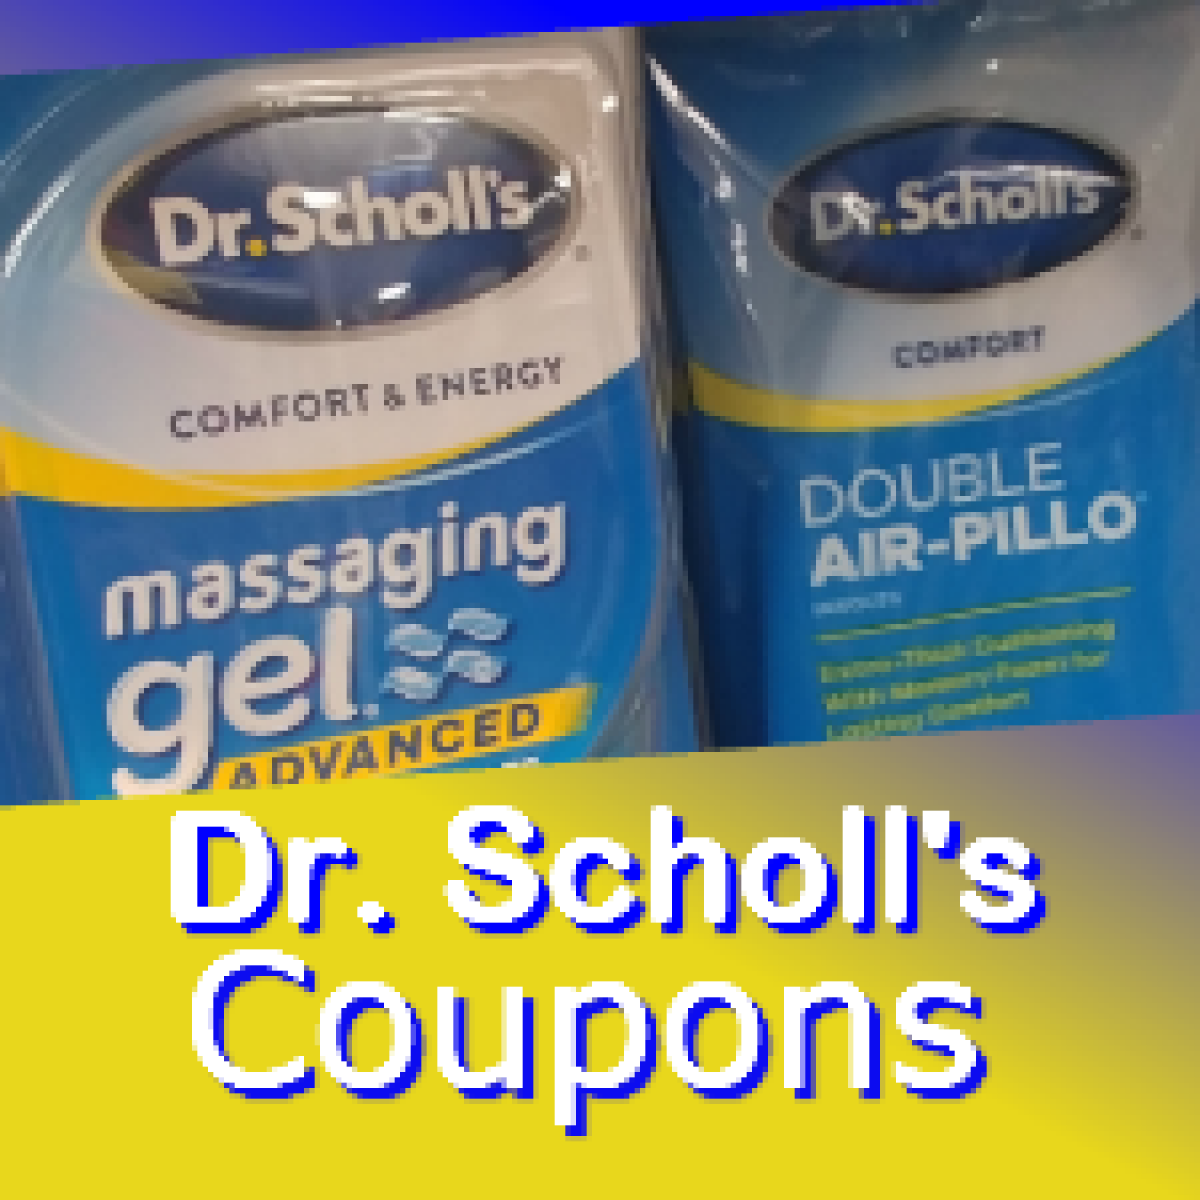 dr scholls coupon code